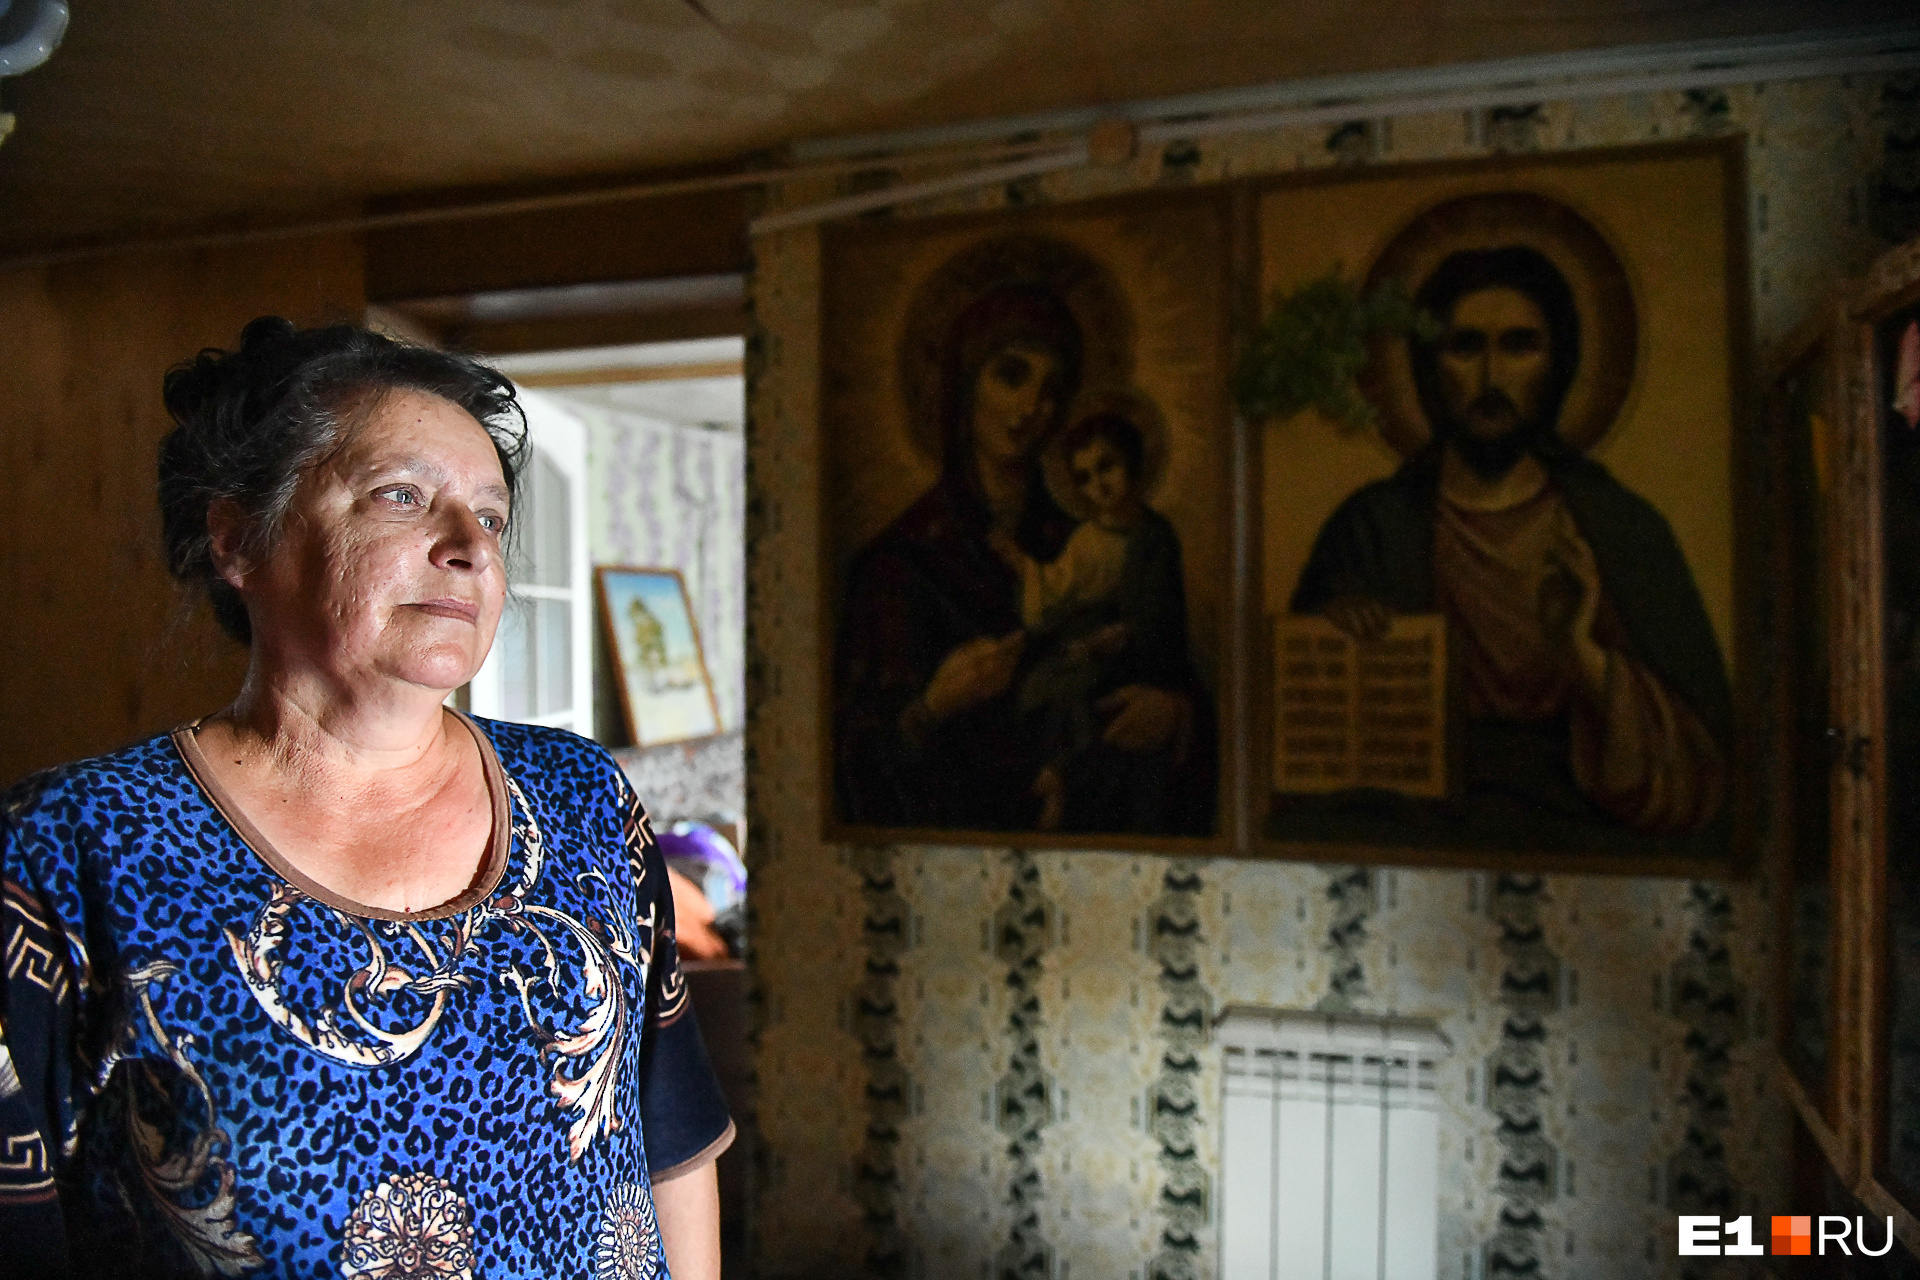 А это жительница дома по Уральских Добровольцев. Ее дом тоже затопило, но женщина вместе с мужем не покинула жилище